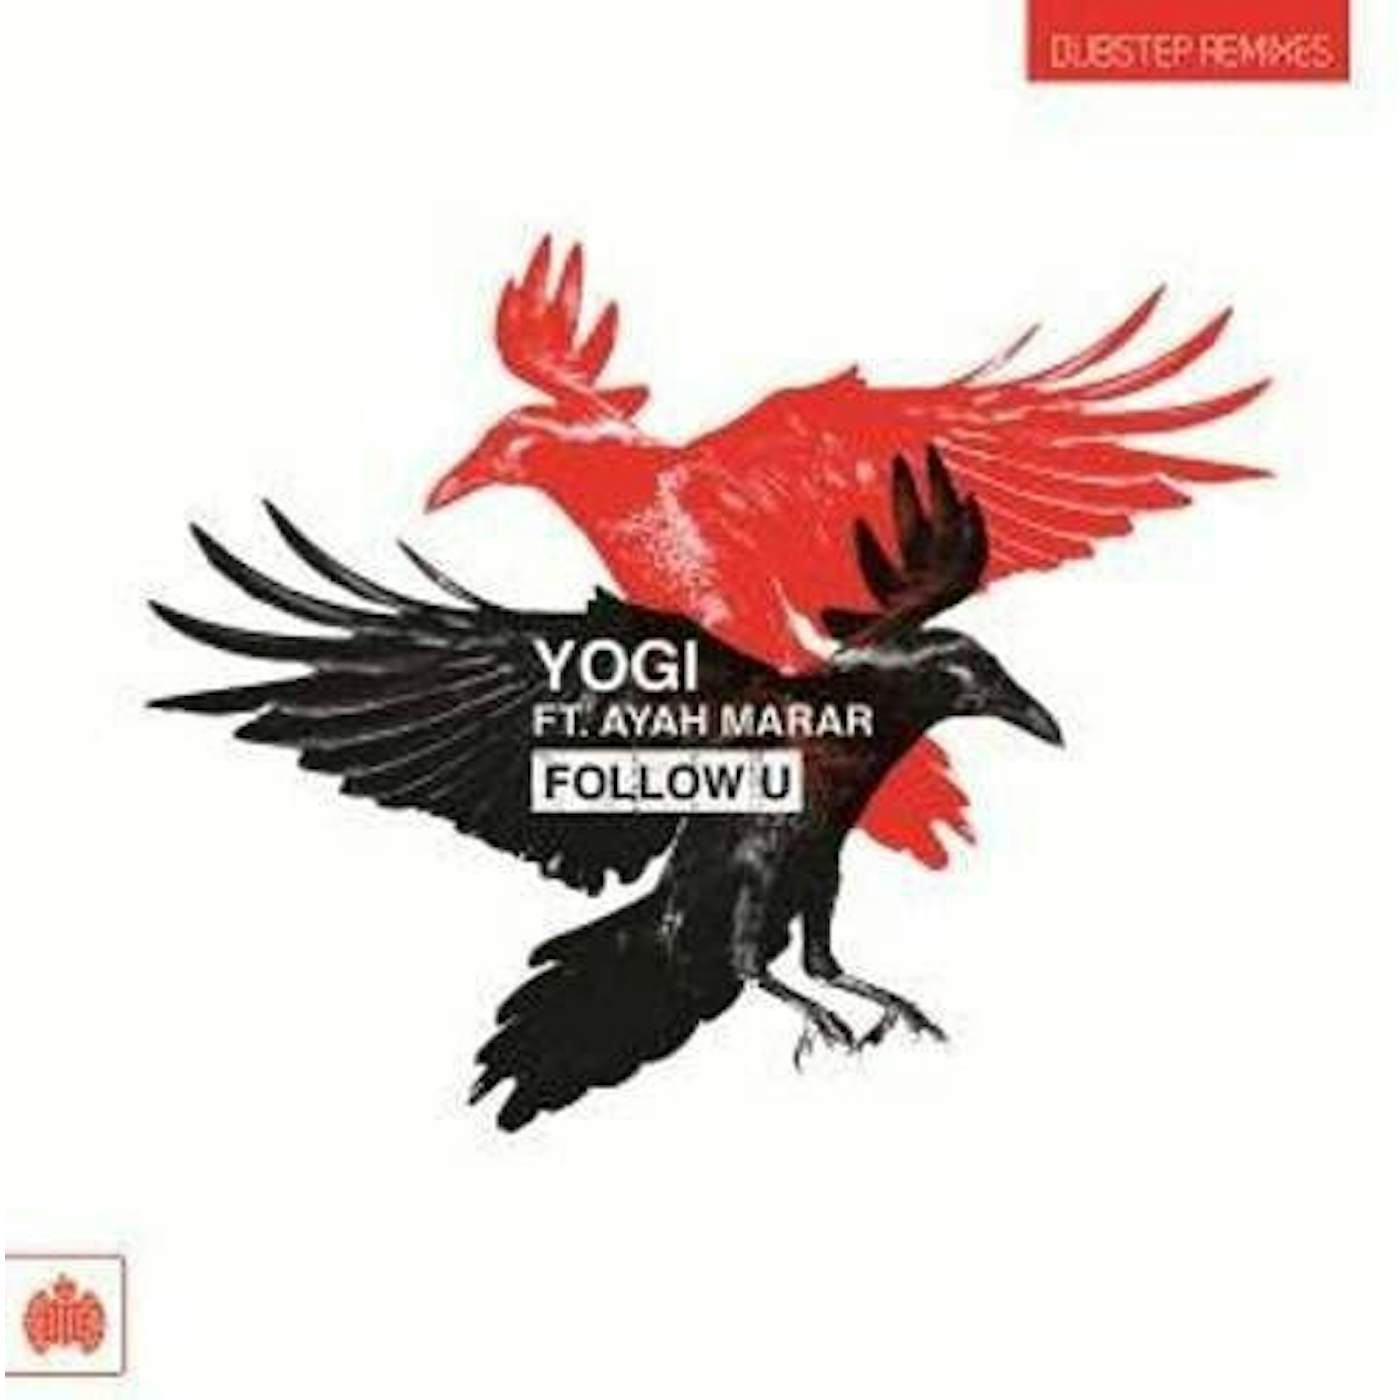 Yogi Feat. Ayah Marar Follow U Vinyl Record